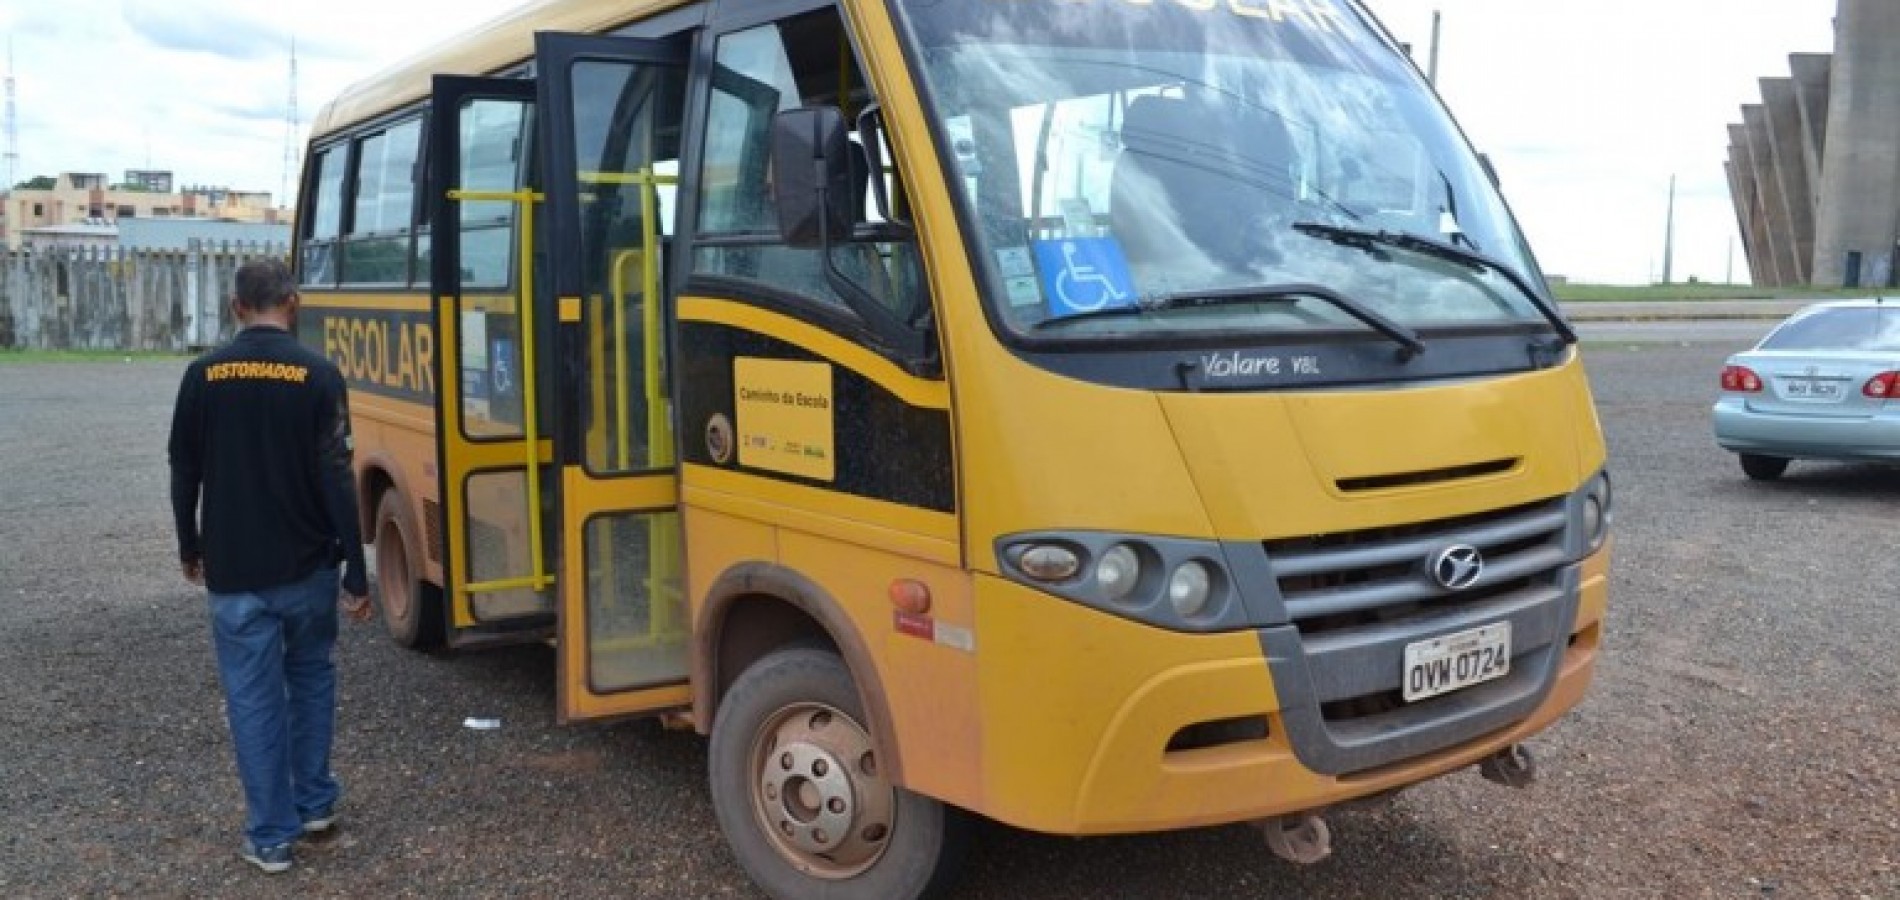 Detran inicia vistoria em veículos de transporte escolar no Piauí